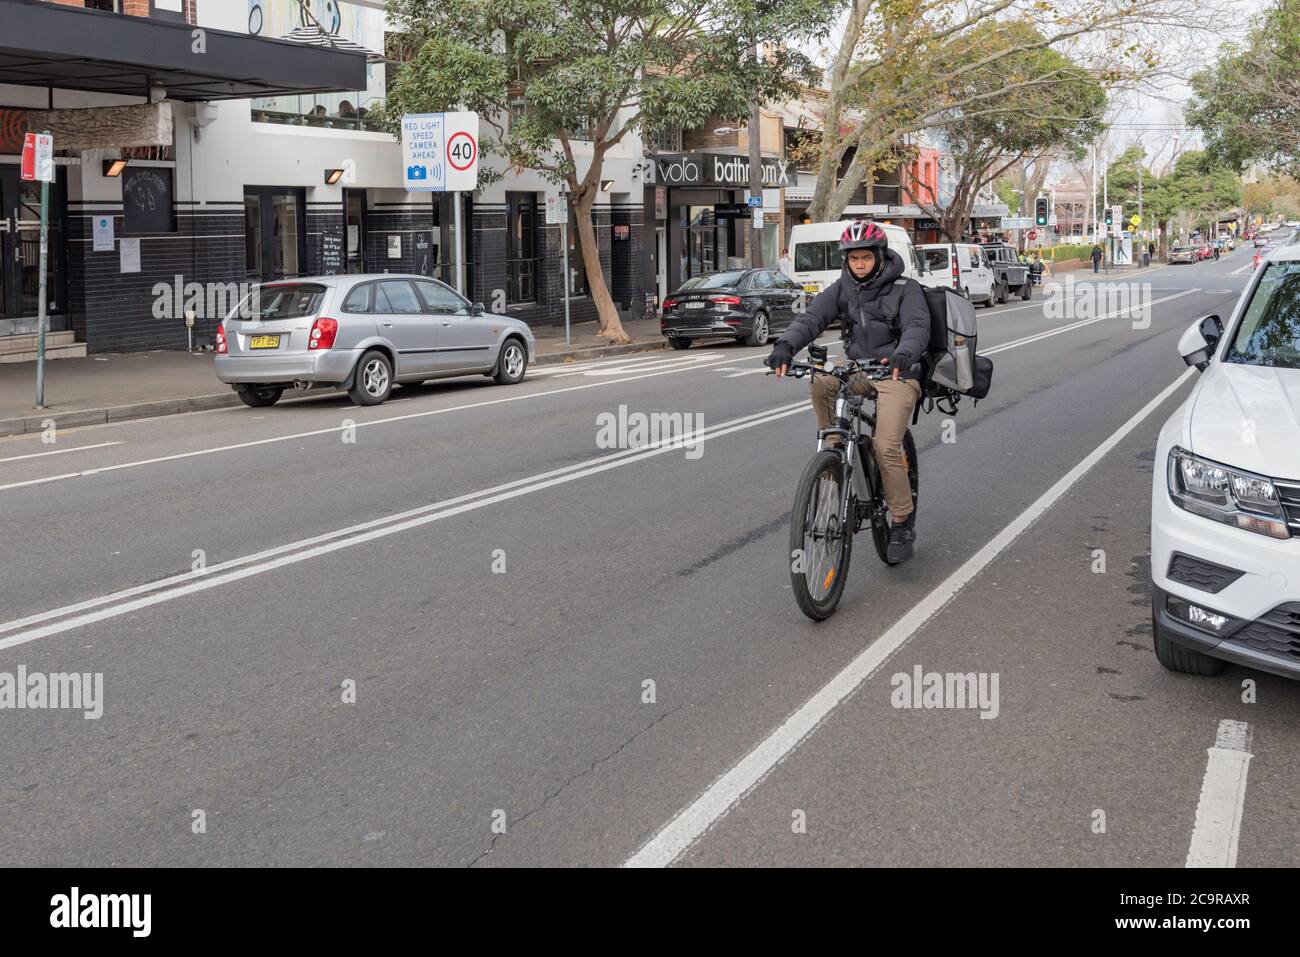 Indossando una balaclava, guanti e una giacca, un corriere di cibo per biciclette (Uber mangia) guida la sua bicicletta su Crown Street a Surry Hills, Sydney, Australia Foto Stock